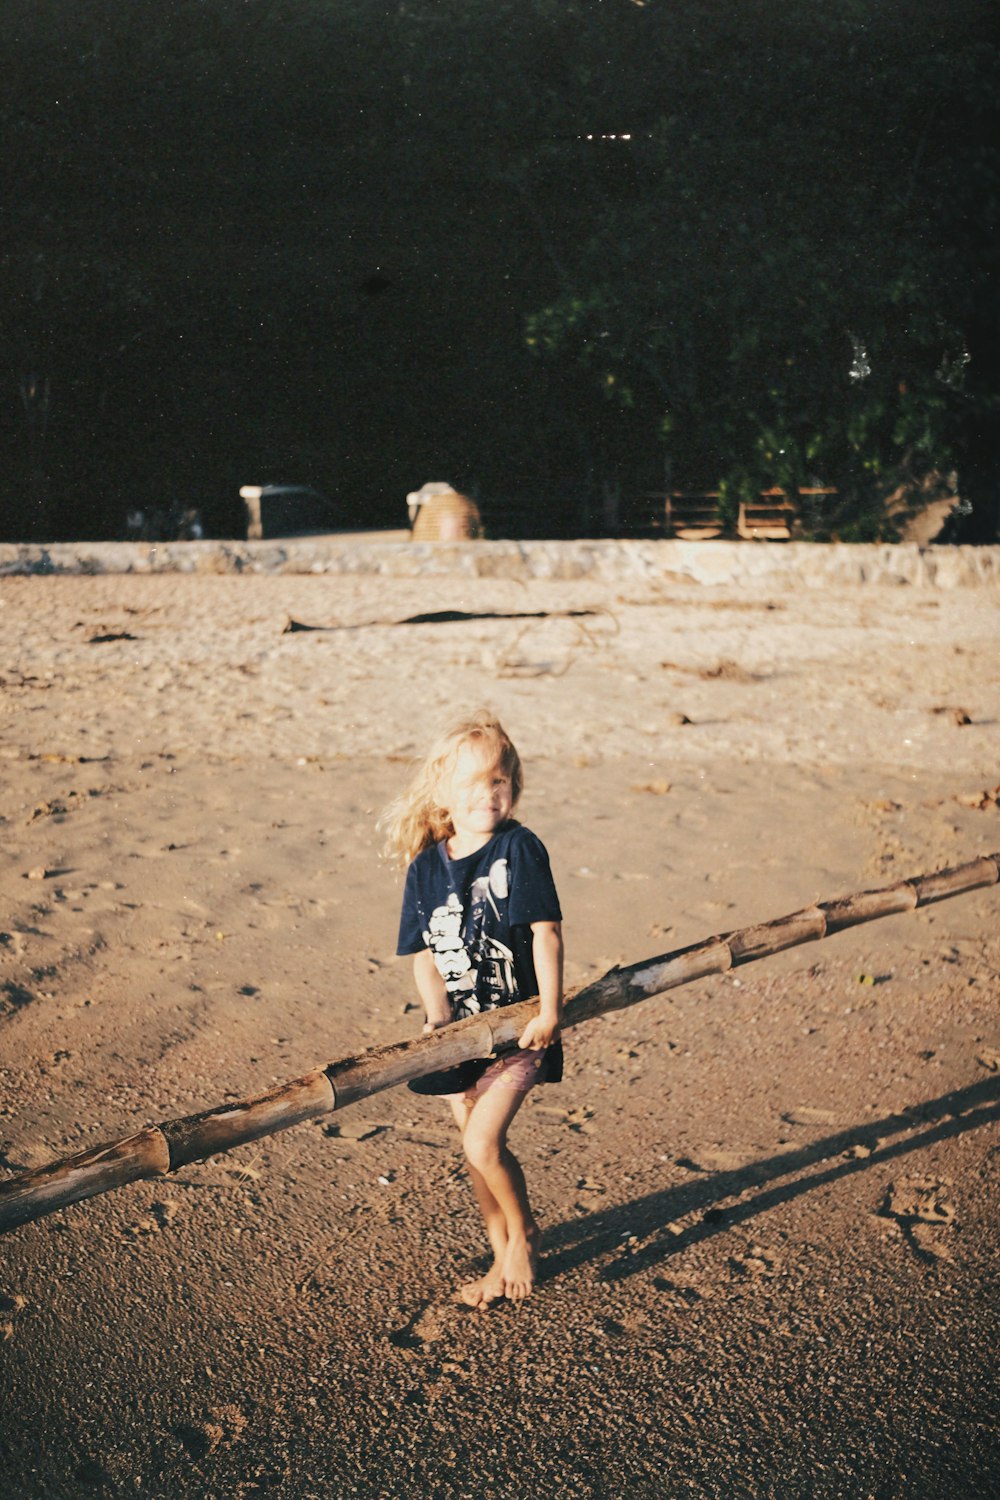 a little boy standing on top of a sandy beach